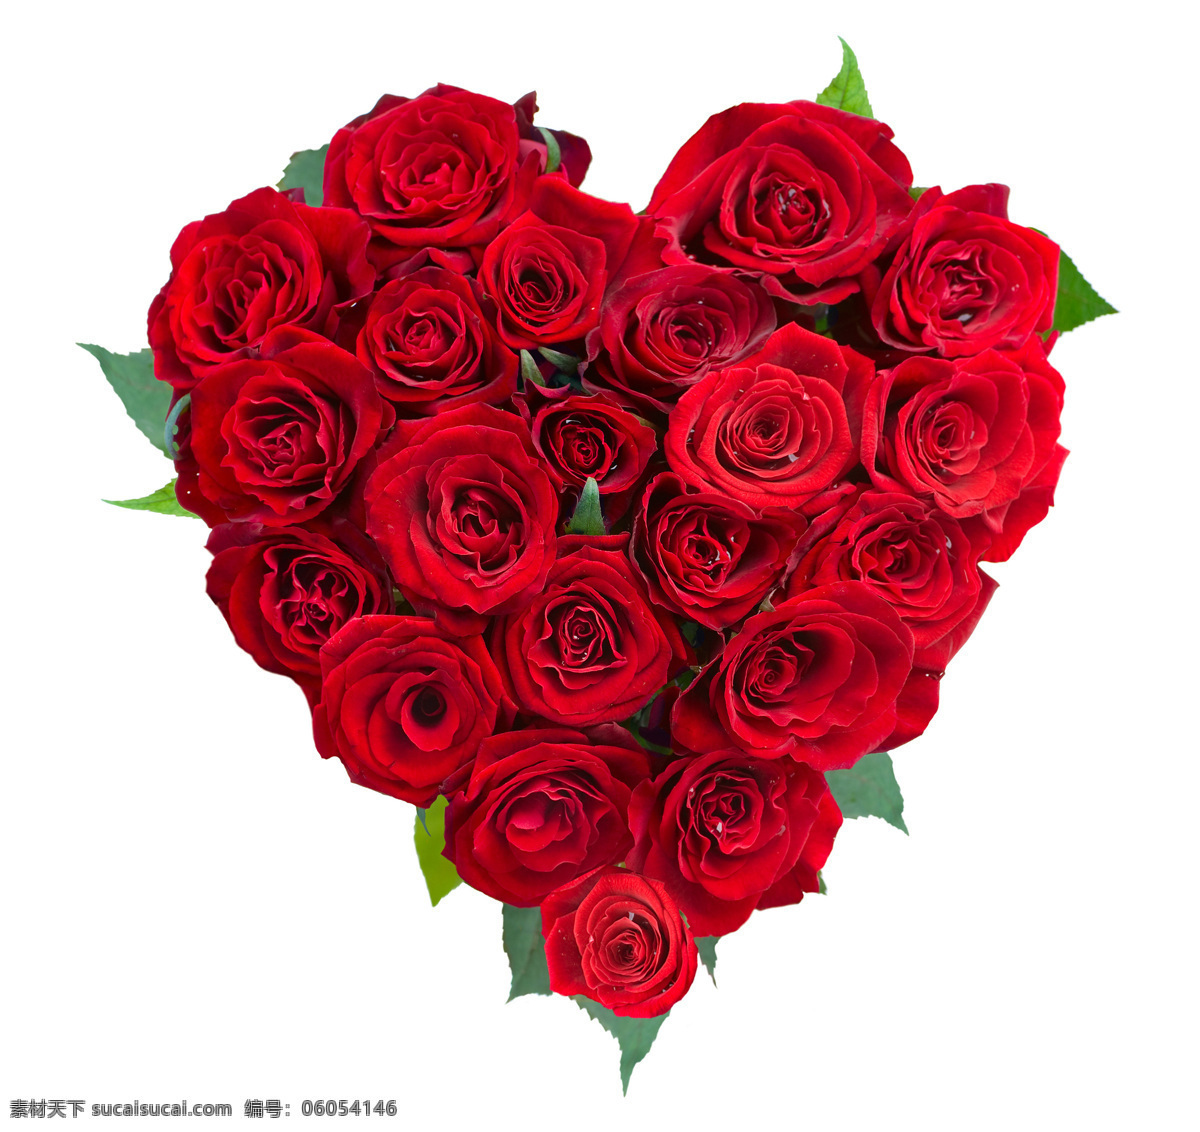 红玫瑰 植物 鲜花 爱情 情人节 爱心 花束 花草树木 生物世界